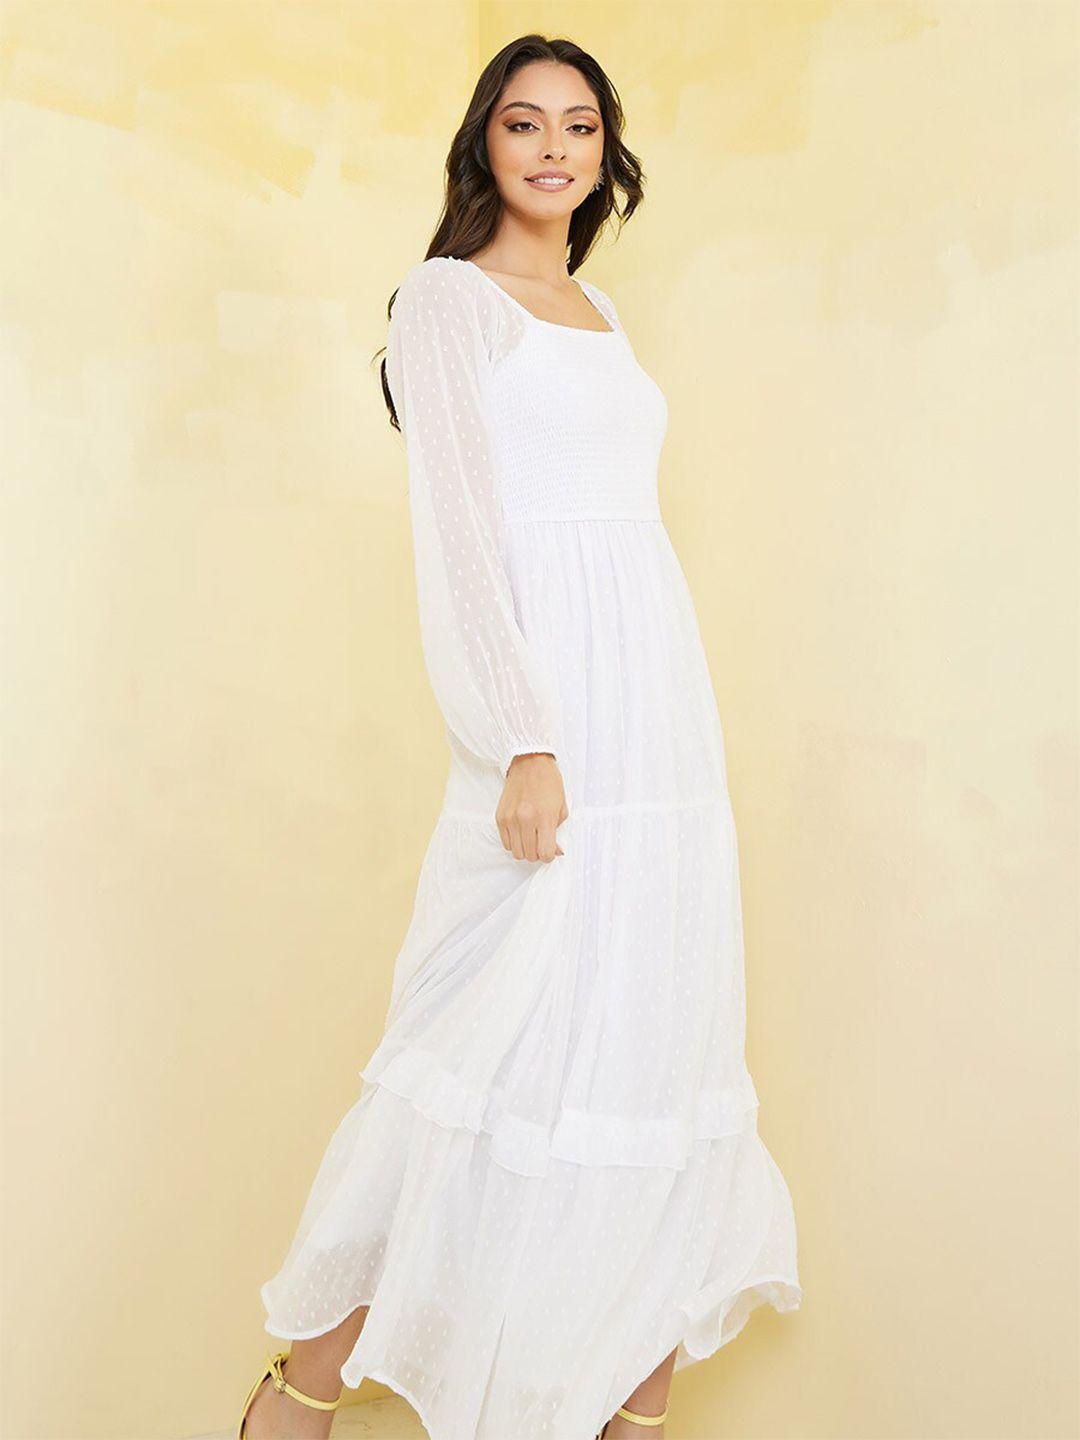 styli white maxi dress